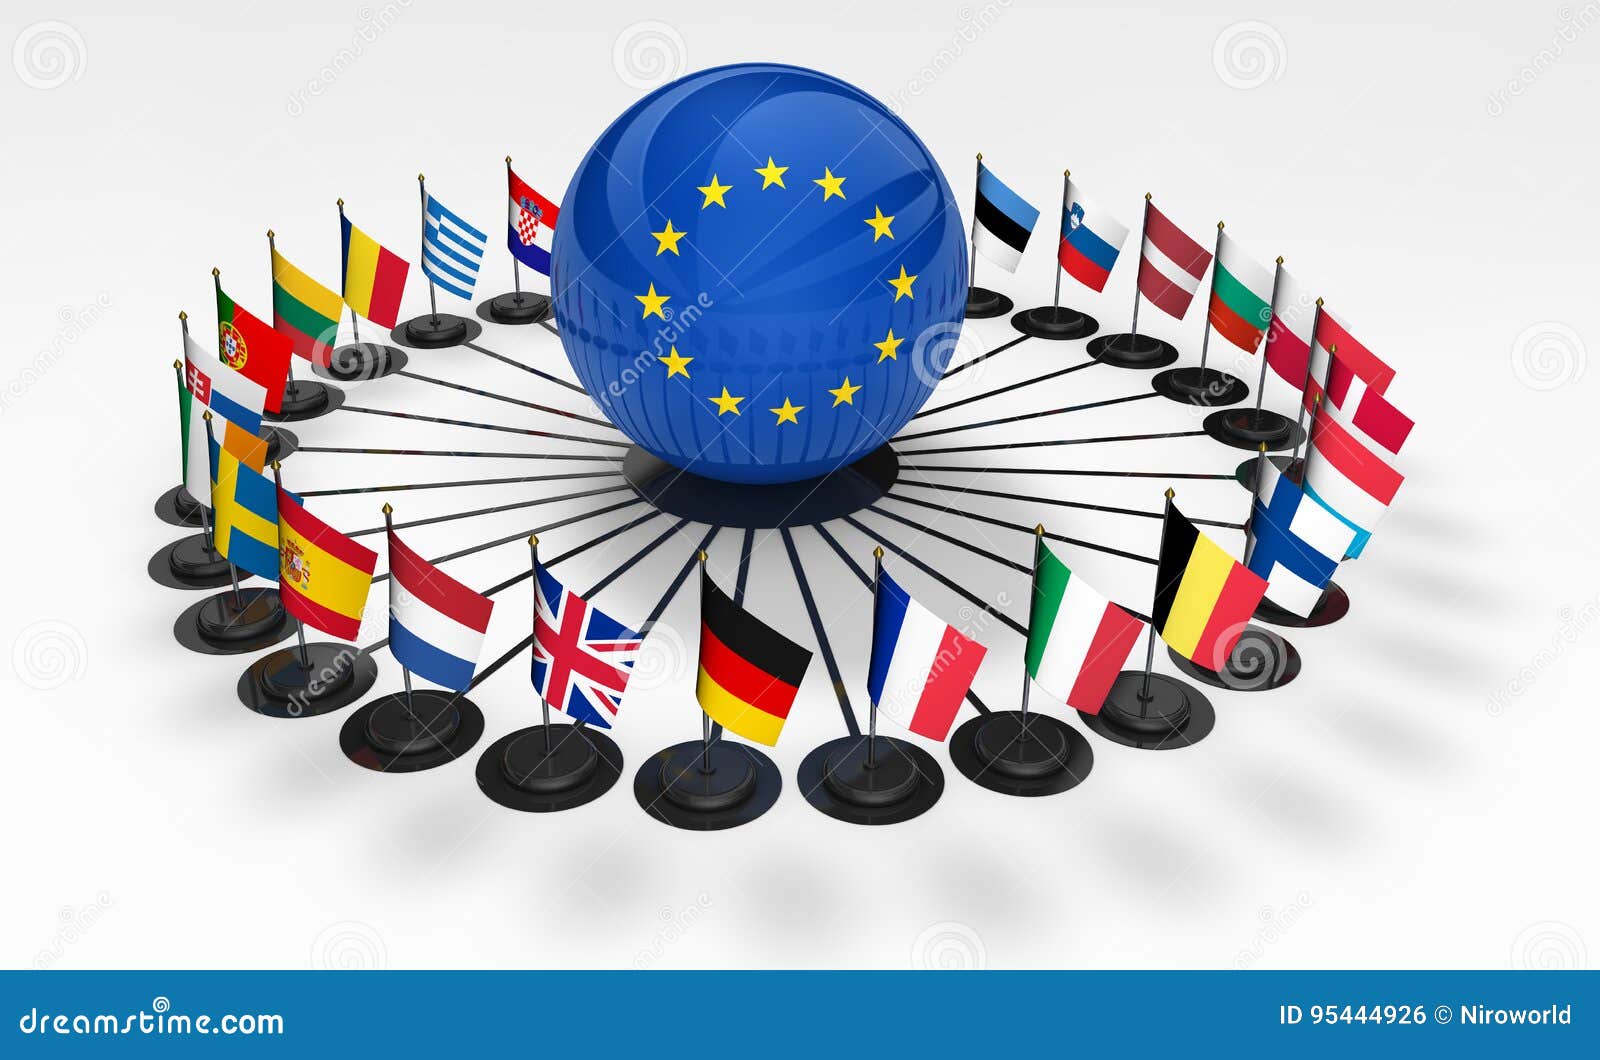 Международные союзы европы